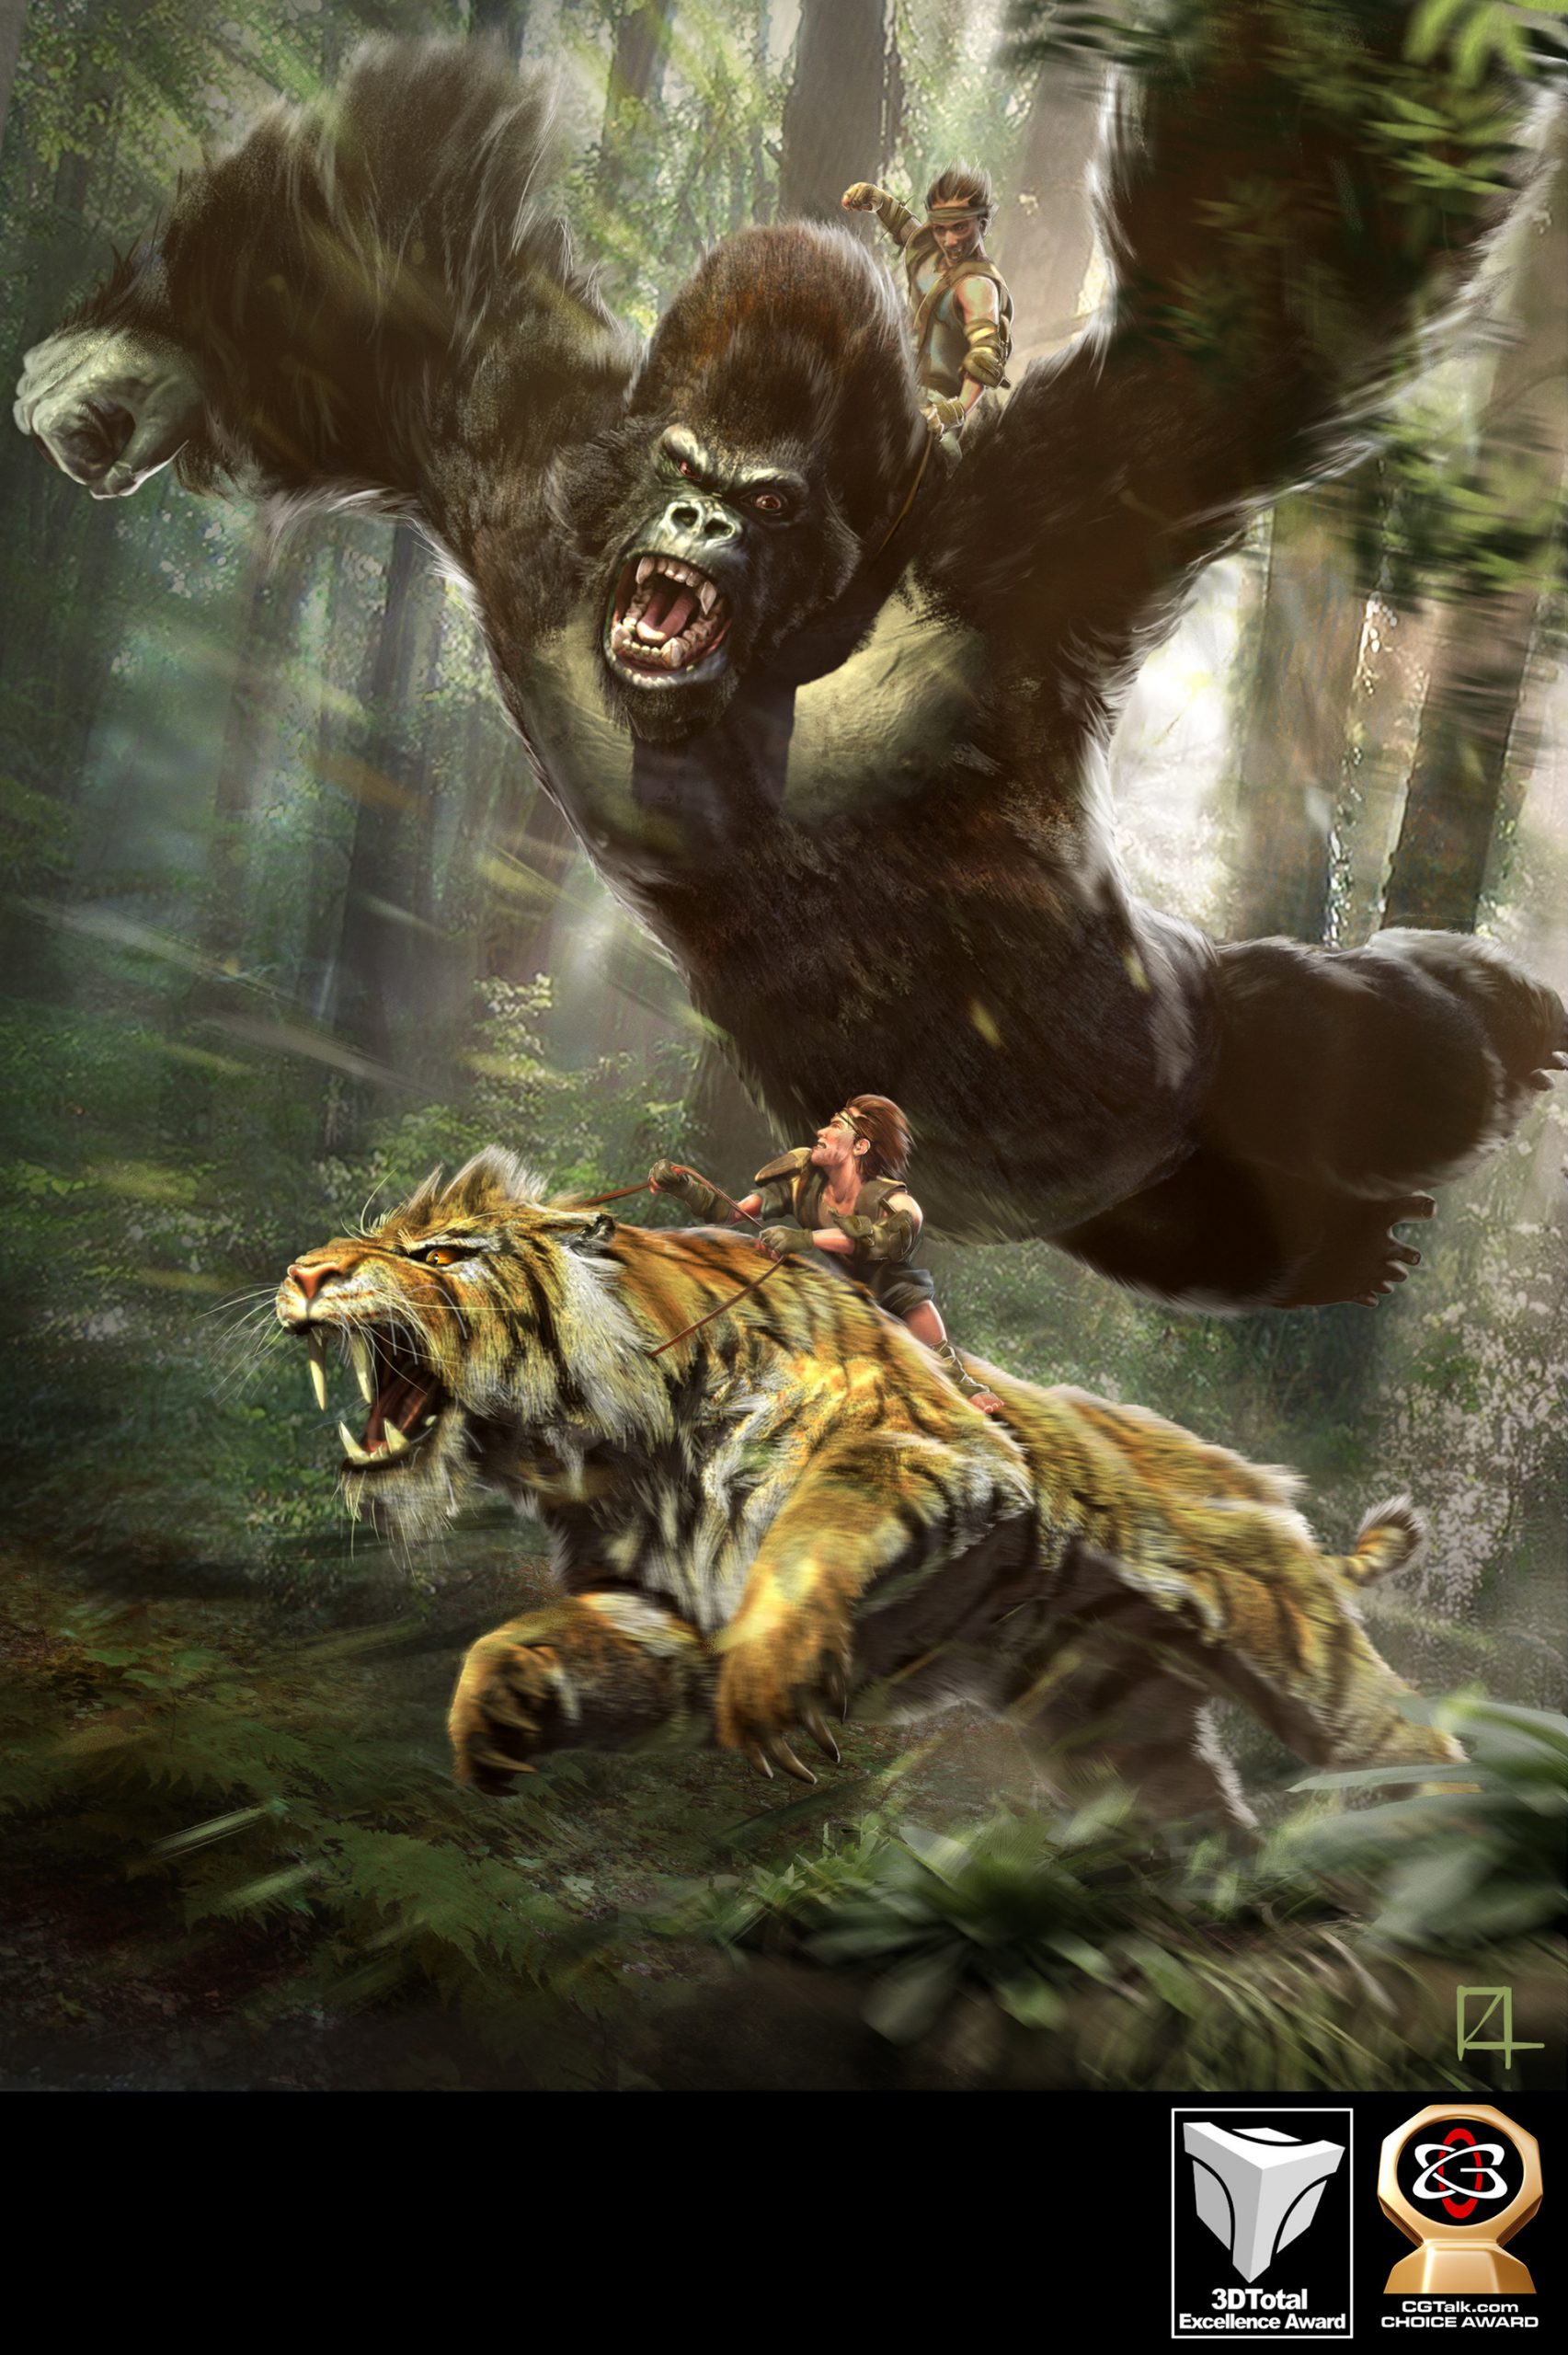 damian-buzugbe-gorilla-vs-tiger-02